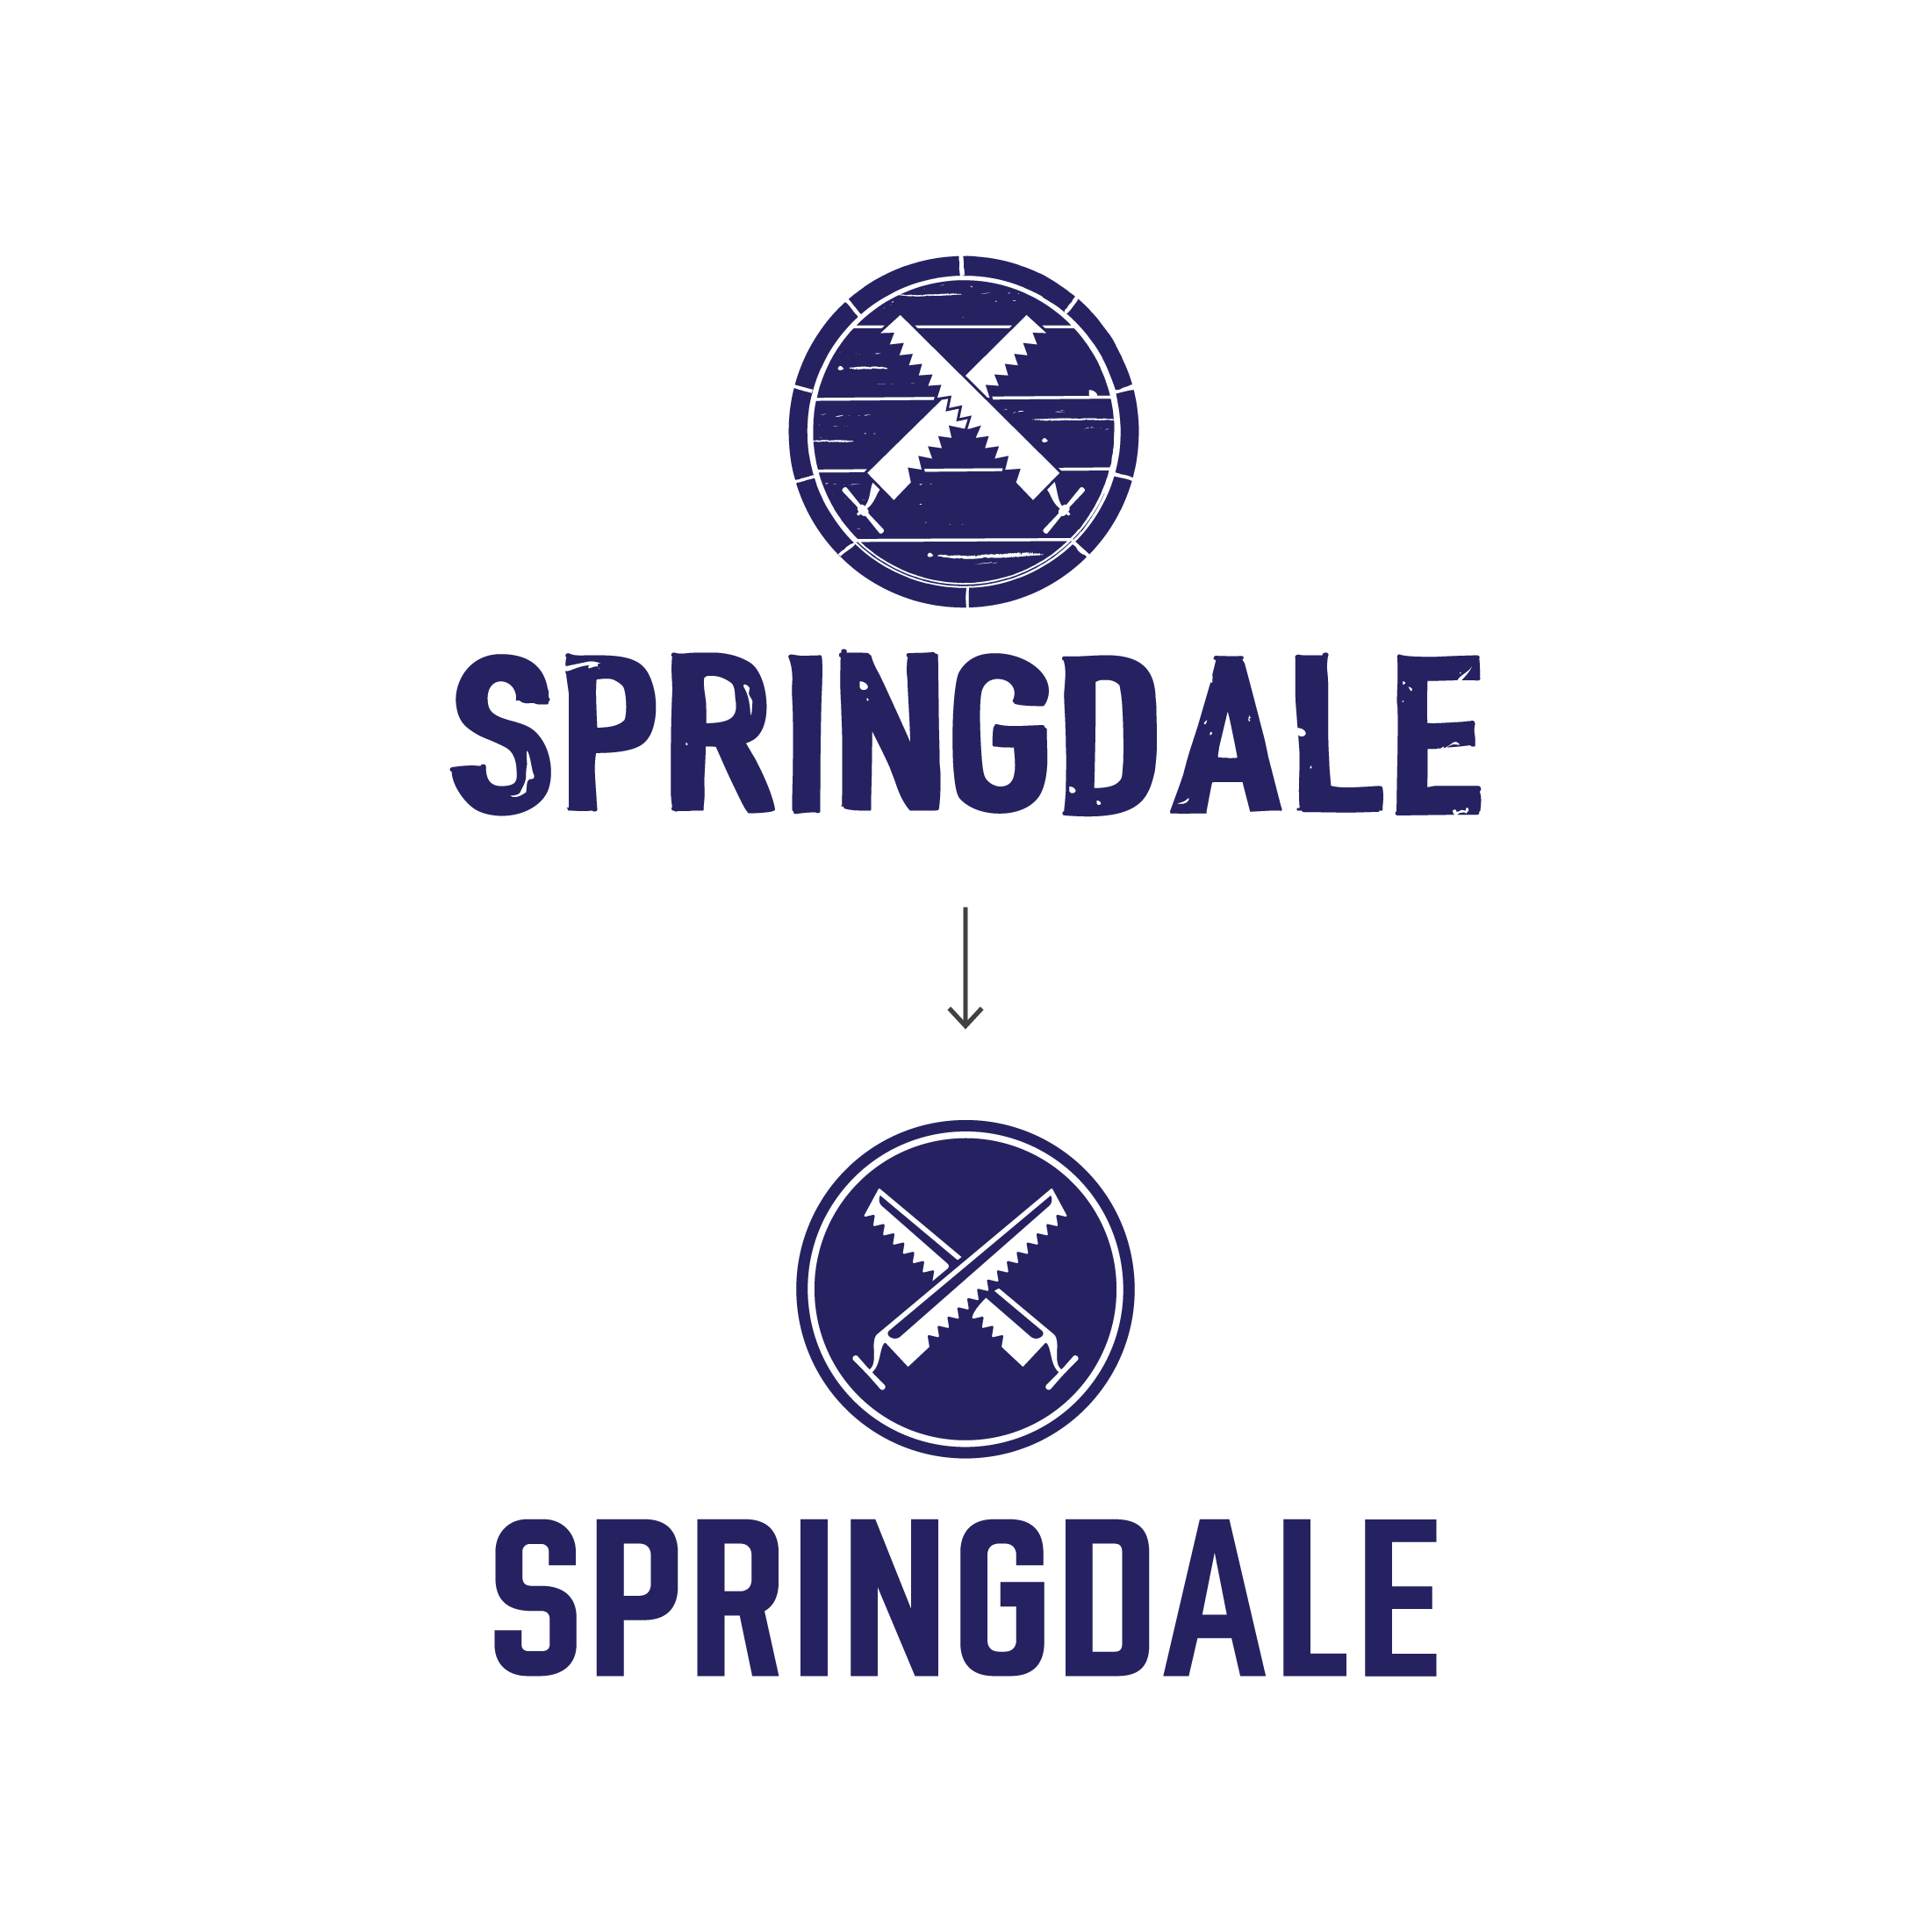 springdale_before_after